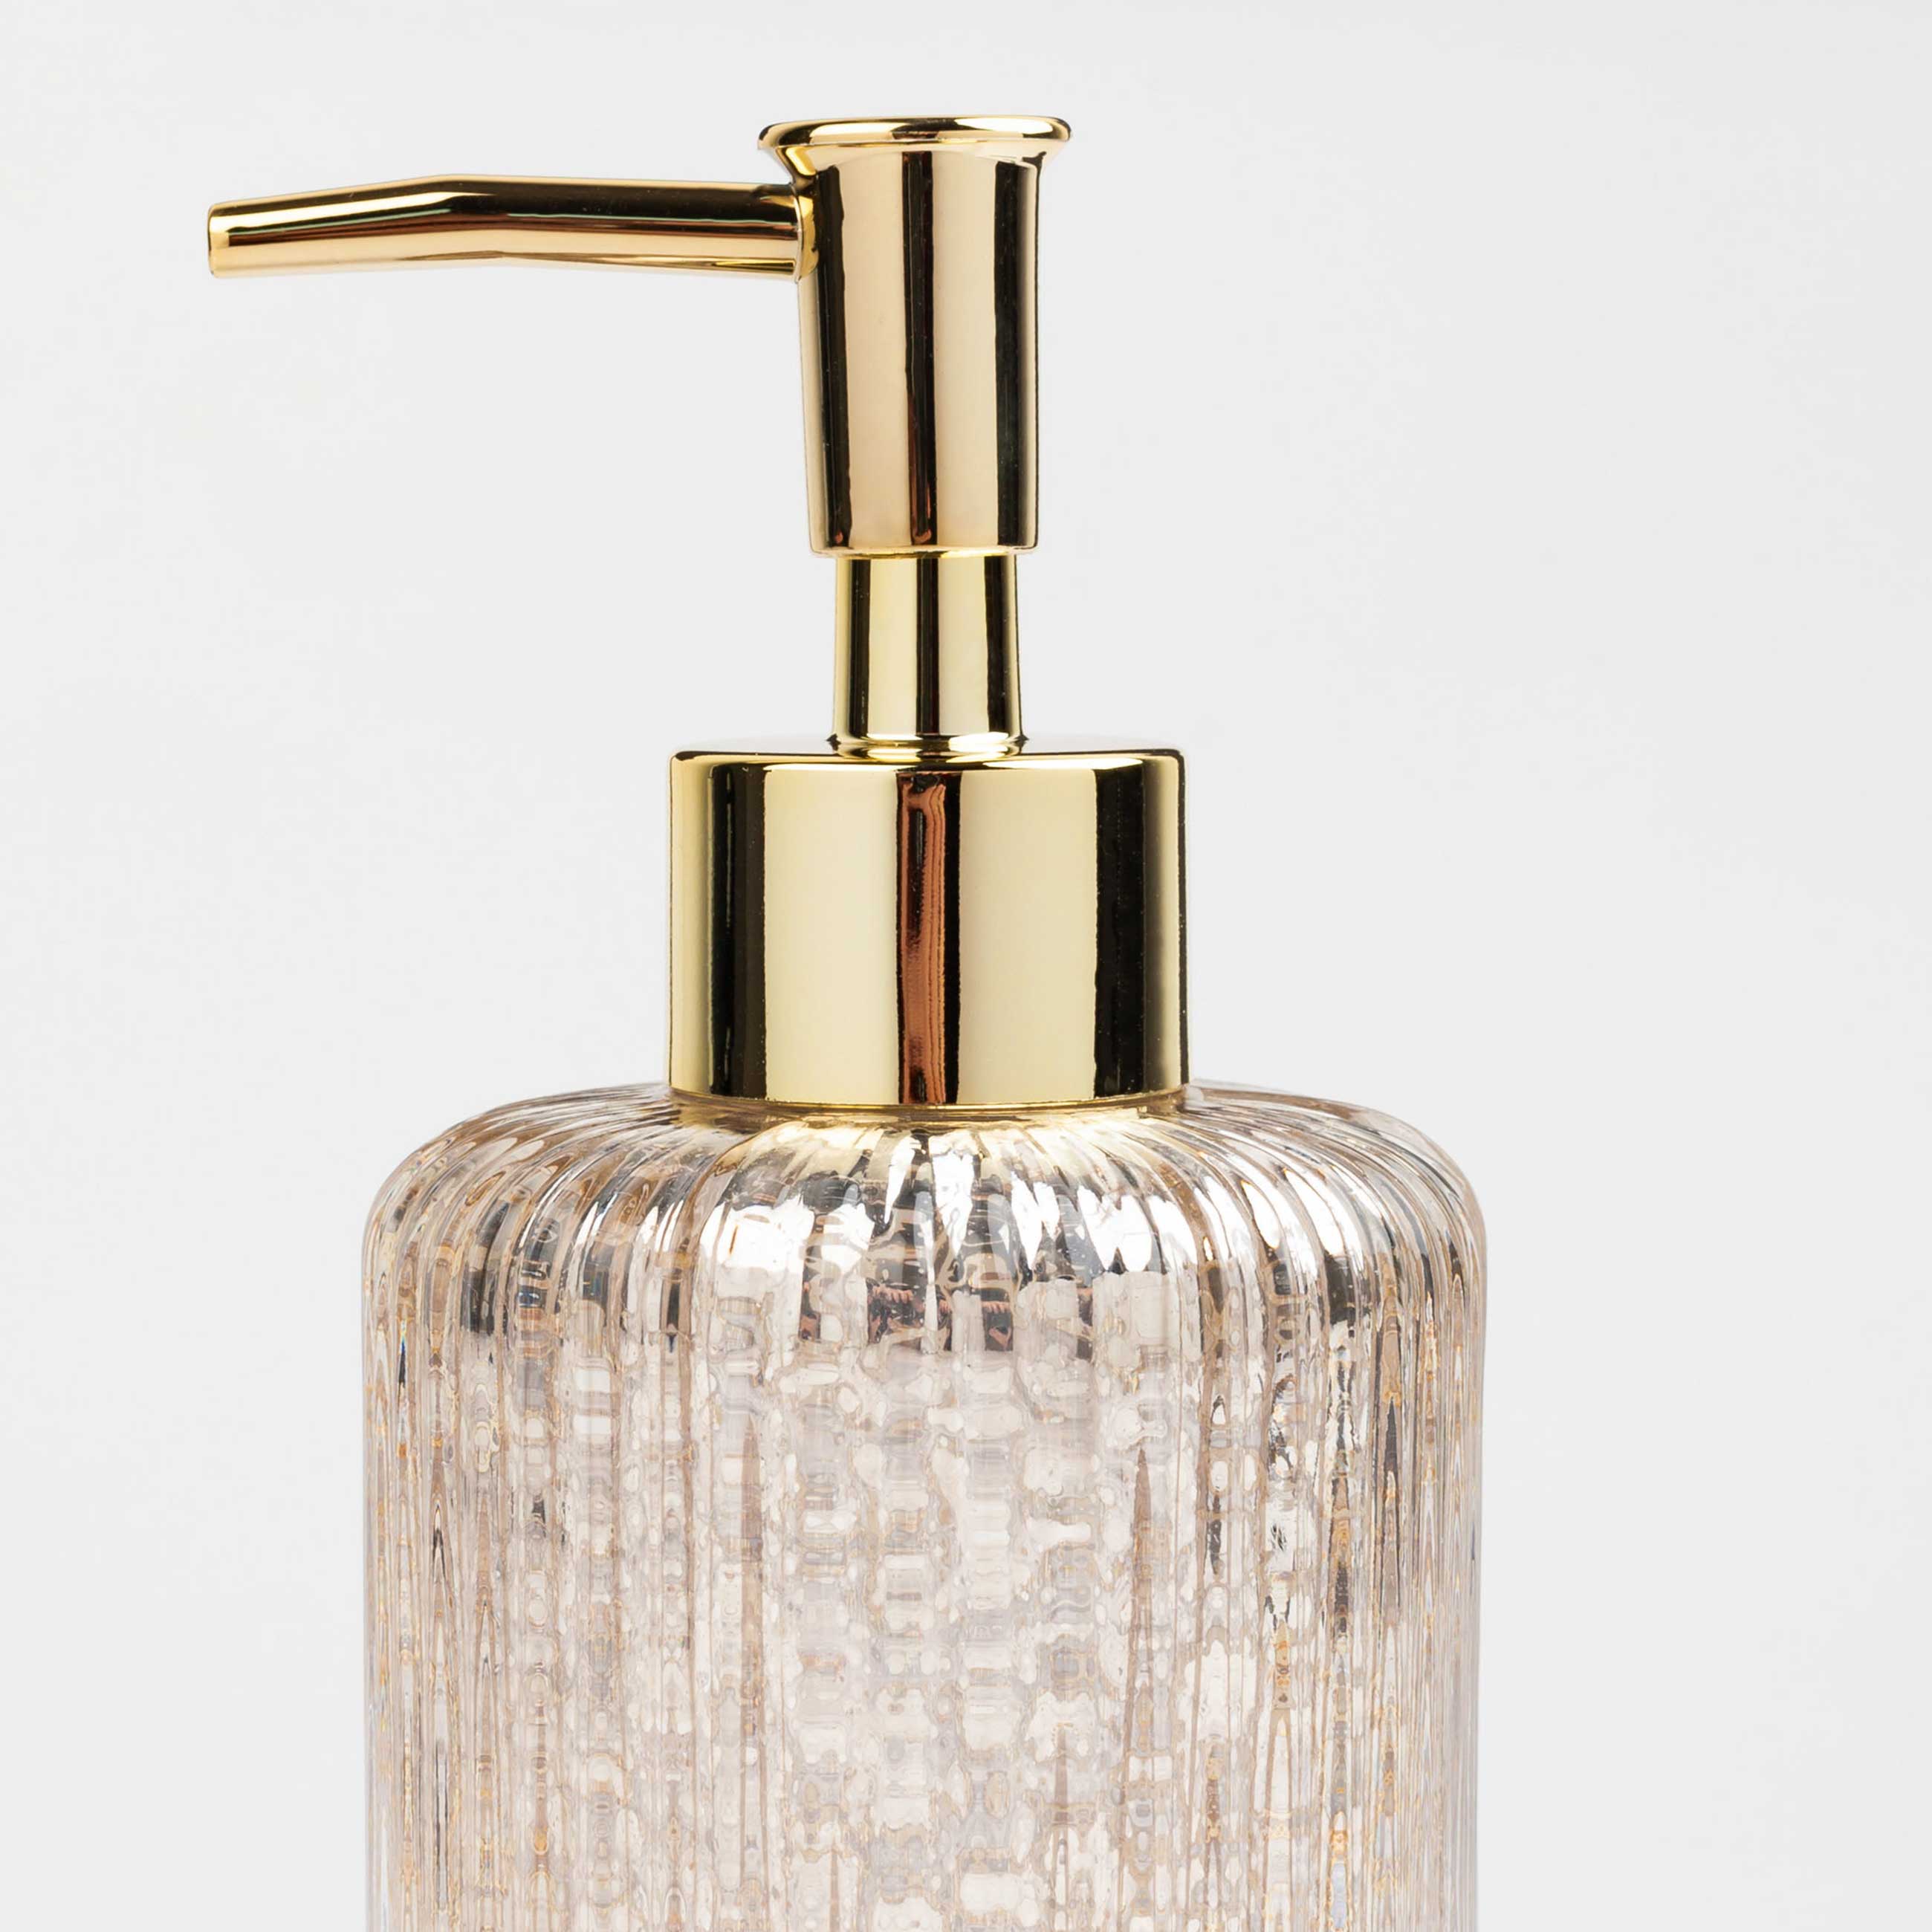 Liquid soap dispenser, 240 ml, glass / plastic, golden, Diana изображение № 3